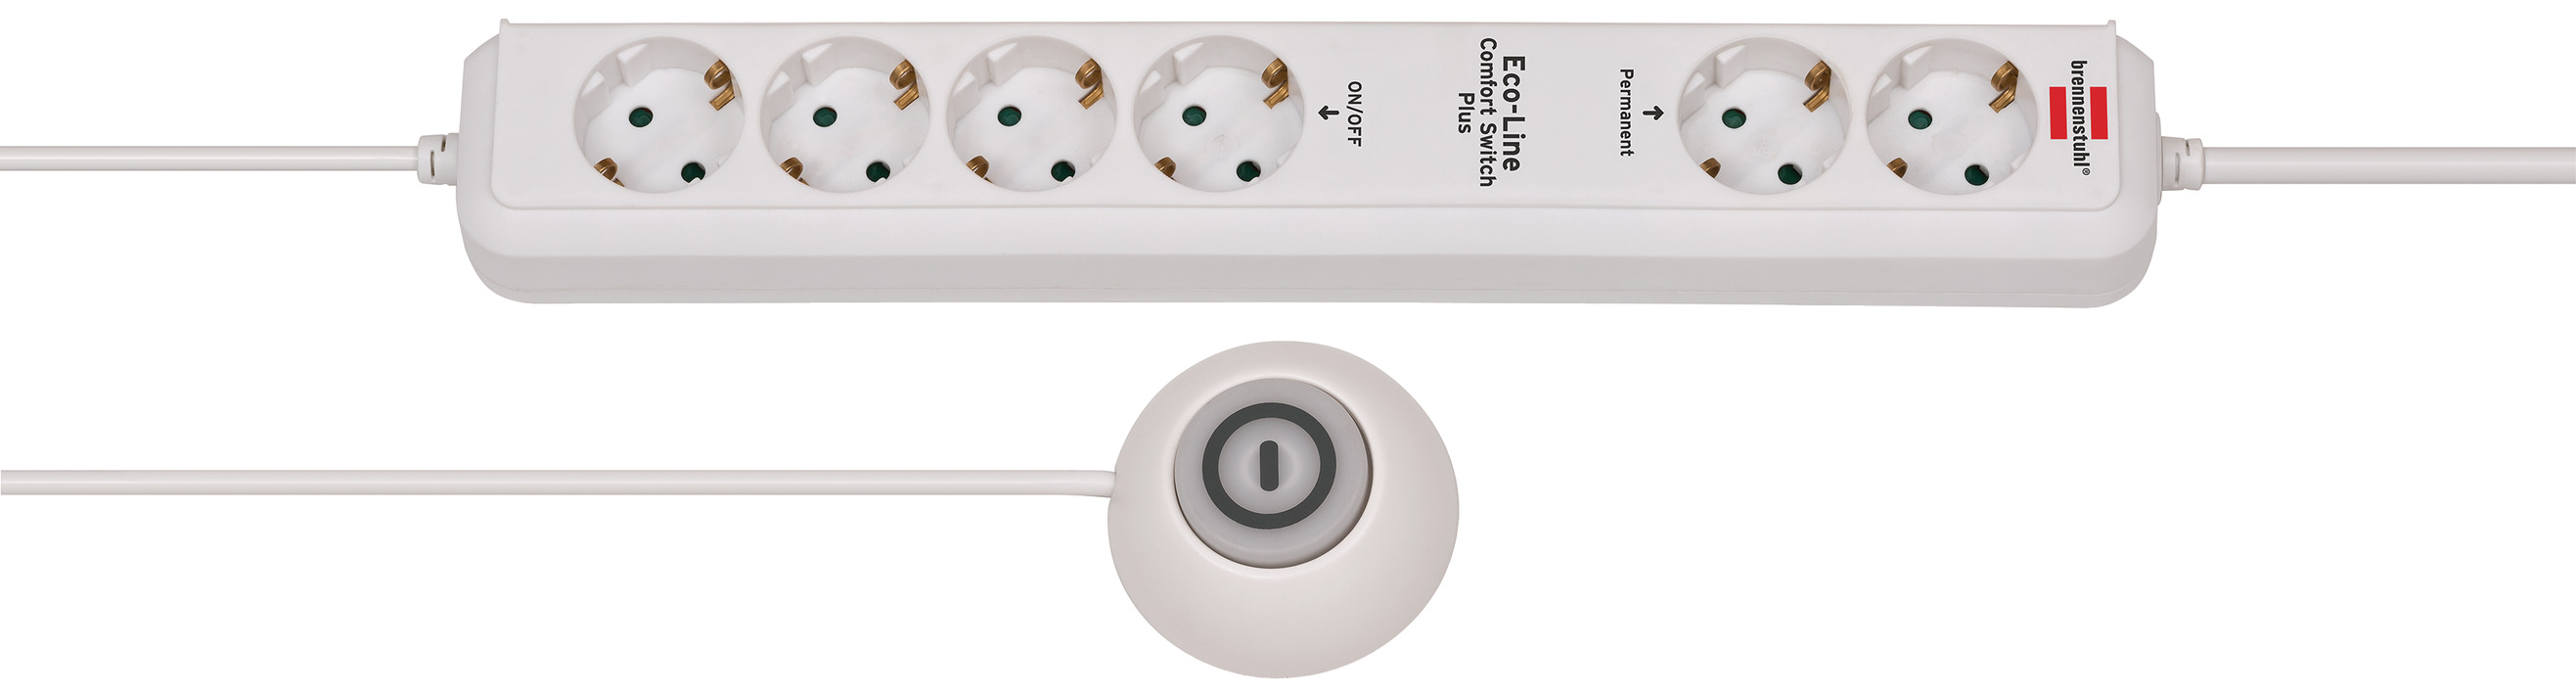 bank het is mooi Tomaat Eco-Line stekkerdoos Comfort Switch Plus EL CSP 24 6-voudig wit 1,5m  H05VV-F 3G1,5 2 permanente, 4 schakelbare externe voetschakelaar |  brennenstuhl®